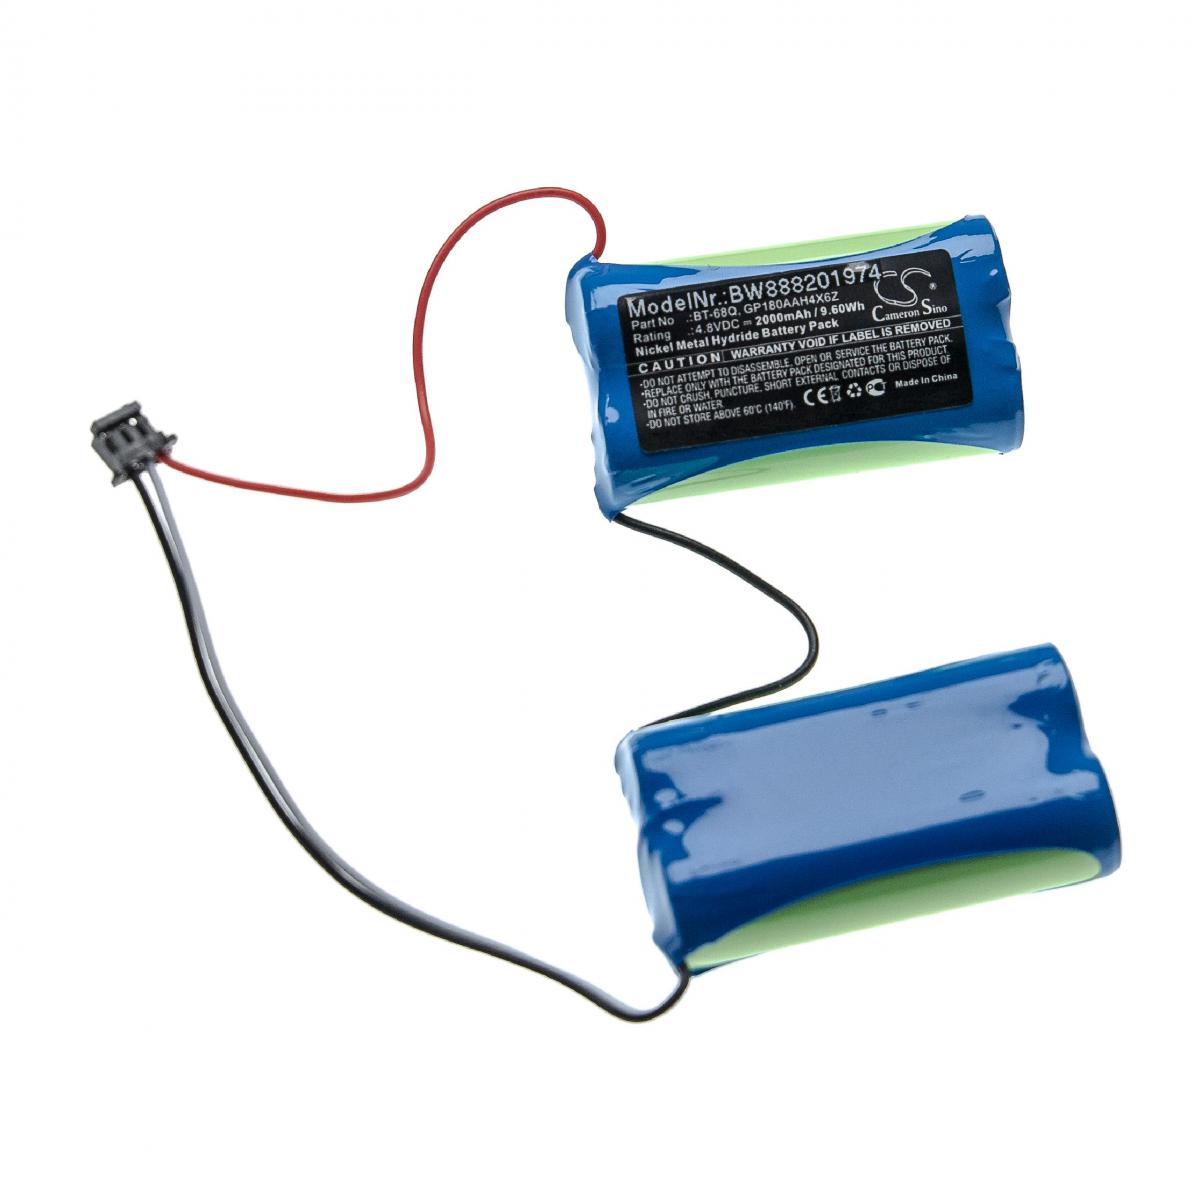 Vhbw - vhbw Batterie compatible avec Topcon LS-B110 Machine Control Laser, LS-B110W outil de mesure (2000mAh, 4,8V, NiMH) - Piles rechargeables